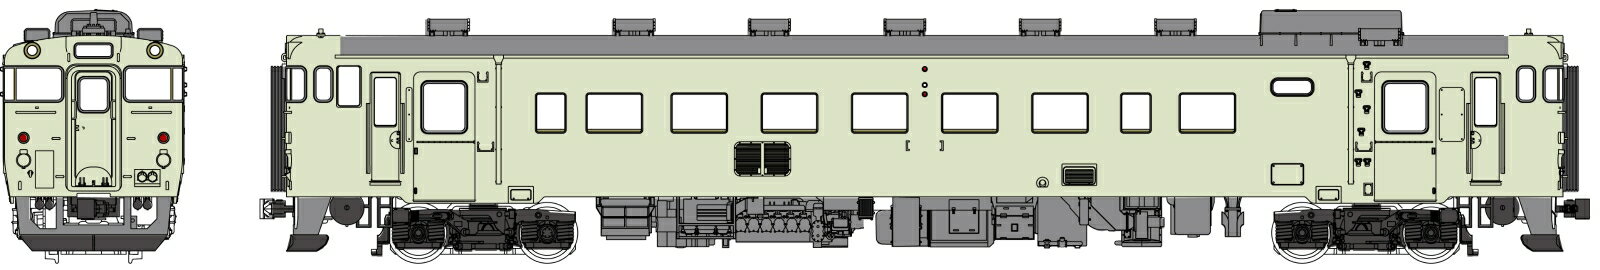 キハ40-100代クリーム10号、動力なし 【TW-K40-100ET】 (鉄道模型 HOゲージ)